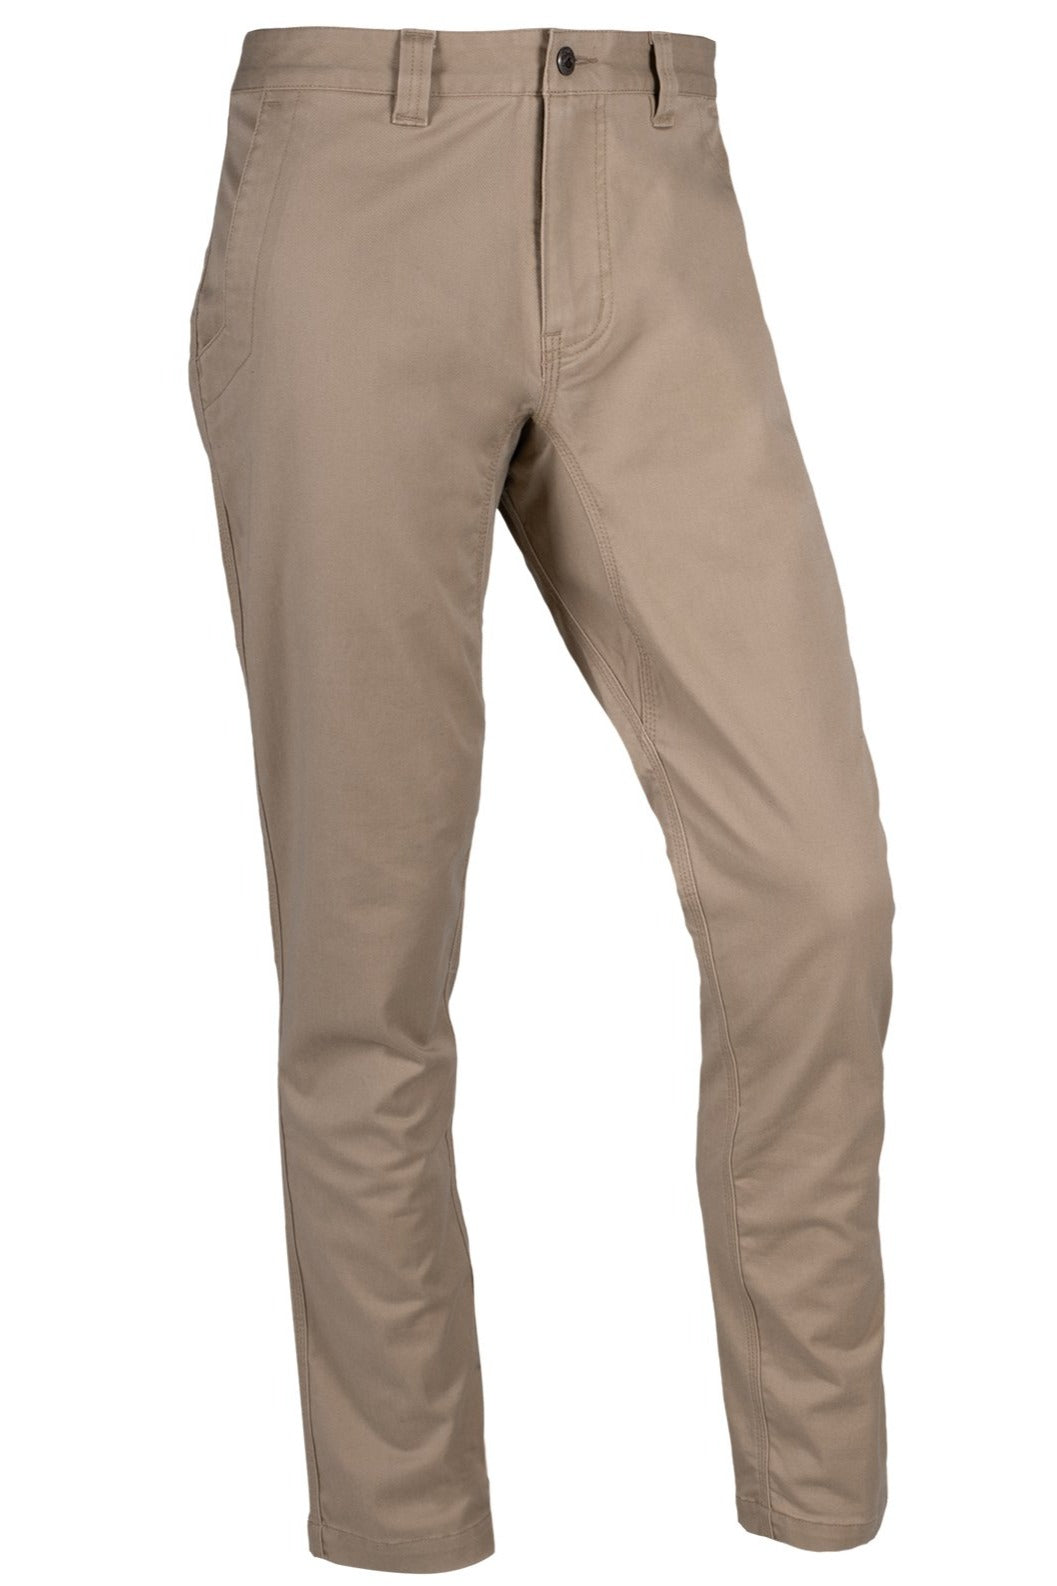 Mountain Khaki Teton Pant Slim Fit- Retro Khaki